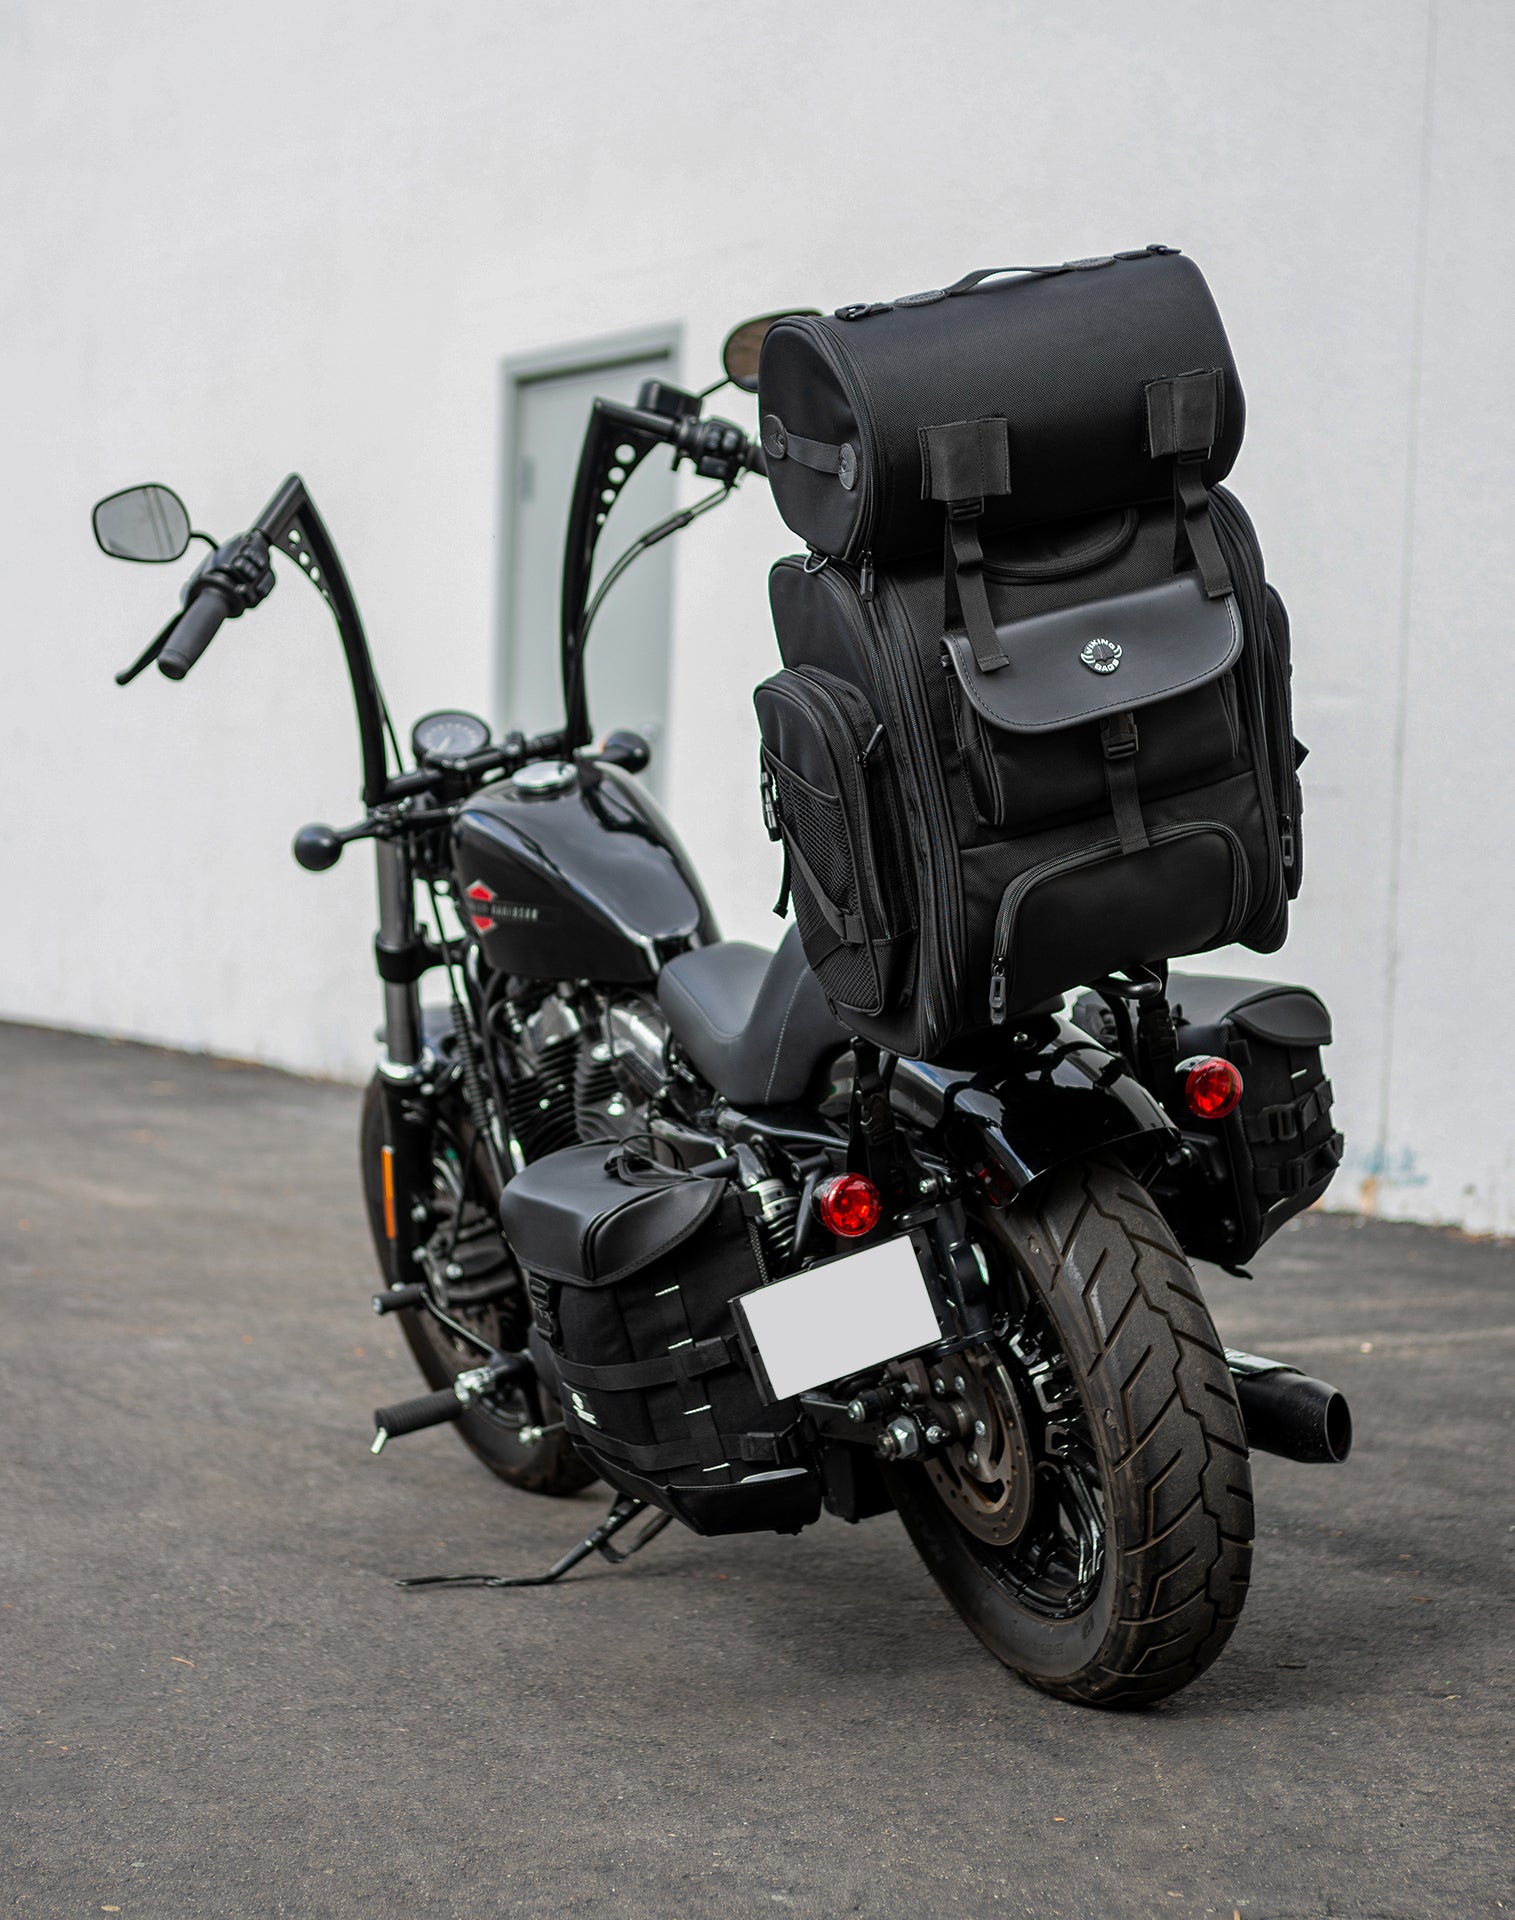 52L - Dwarf XL Yamaha Motorcycle Sissy Bar Bag